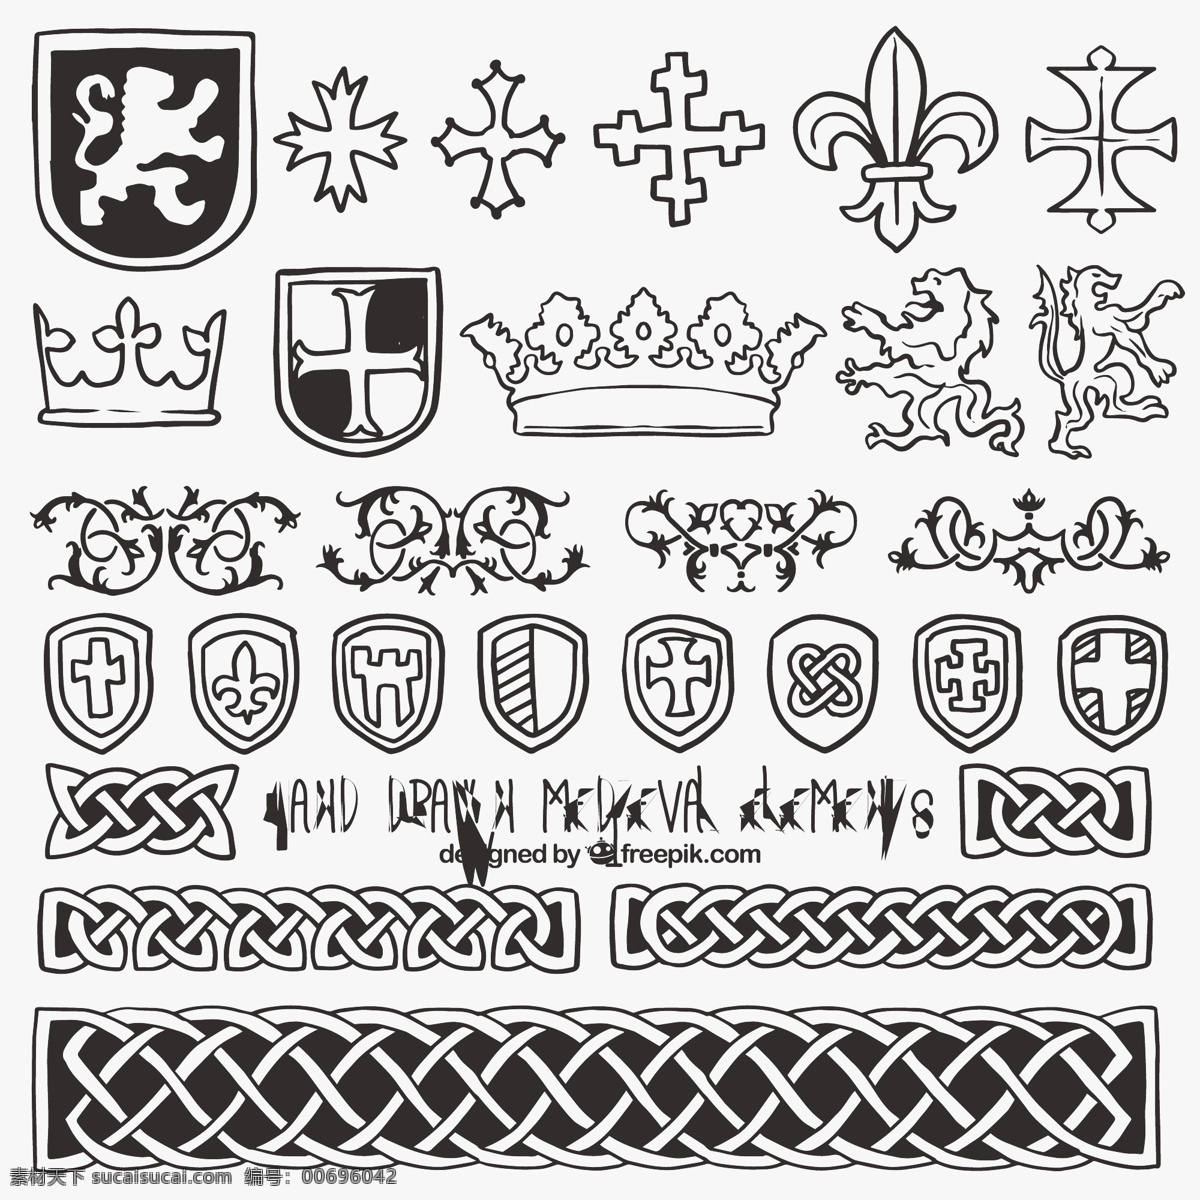 盾 中世纪 元素 集合 一方面 皇冠 徽章 盾牌 手绘 安全 交叉 装饰 绘画 象征 符号 元 纹章 受到保护 白色